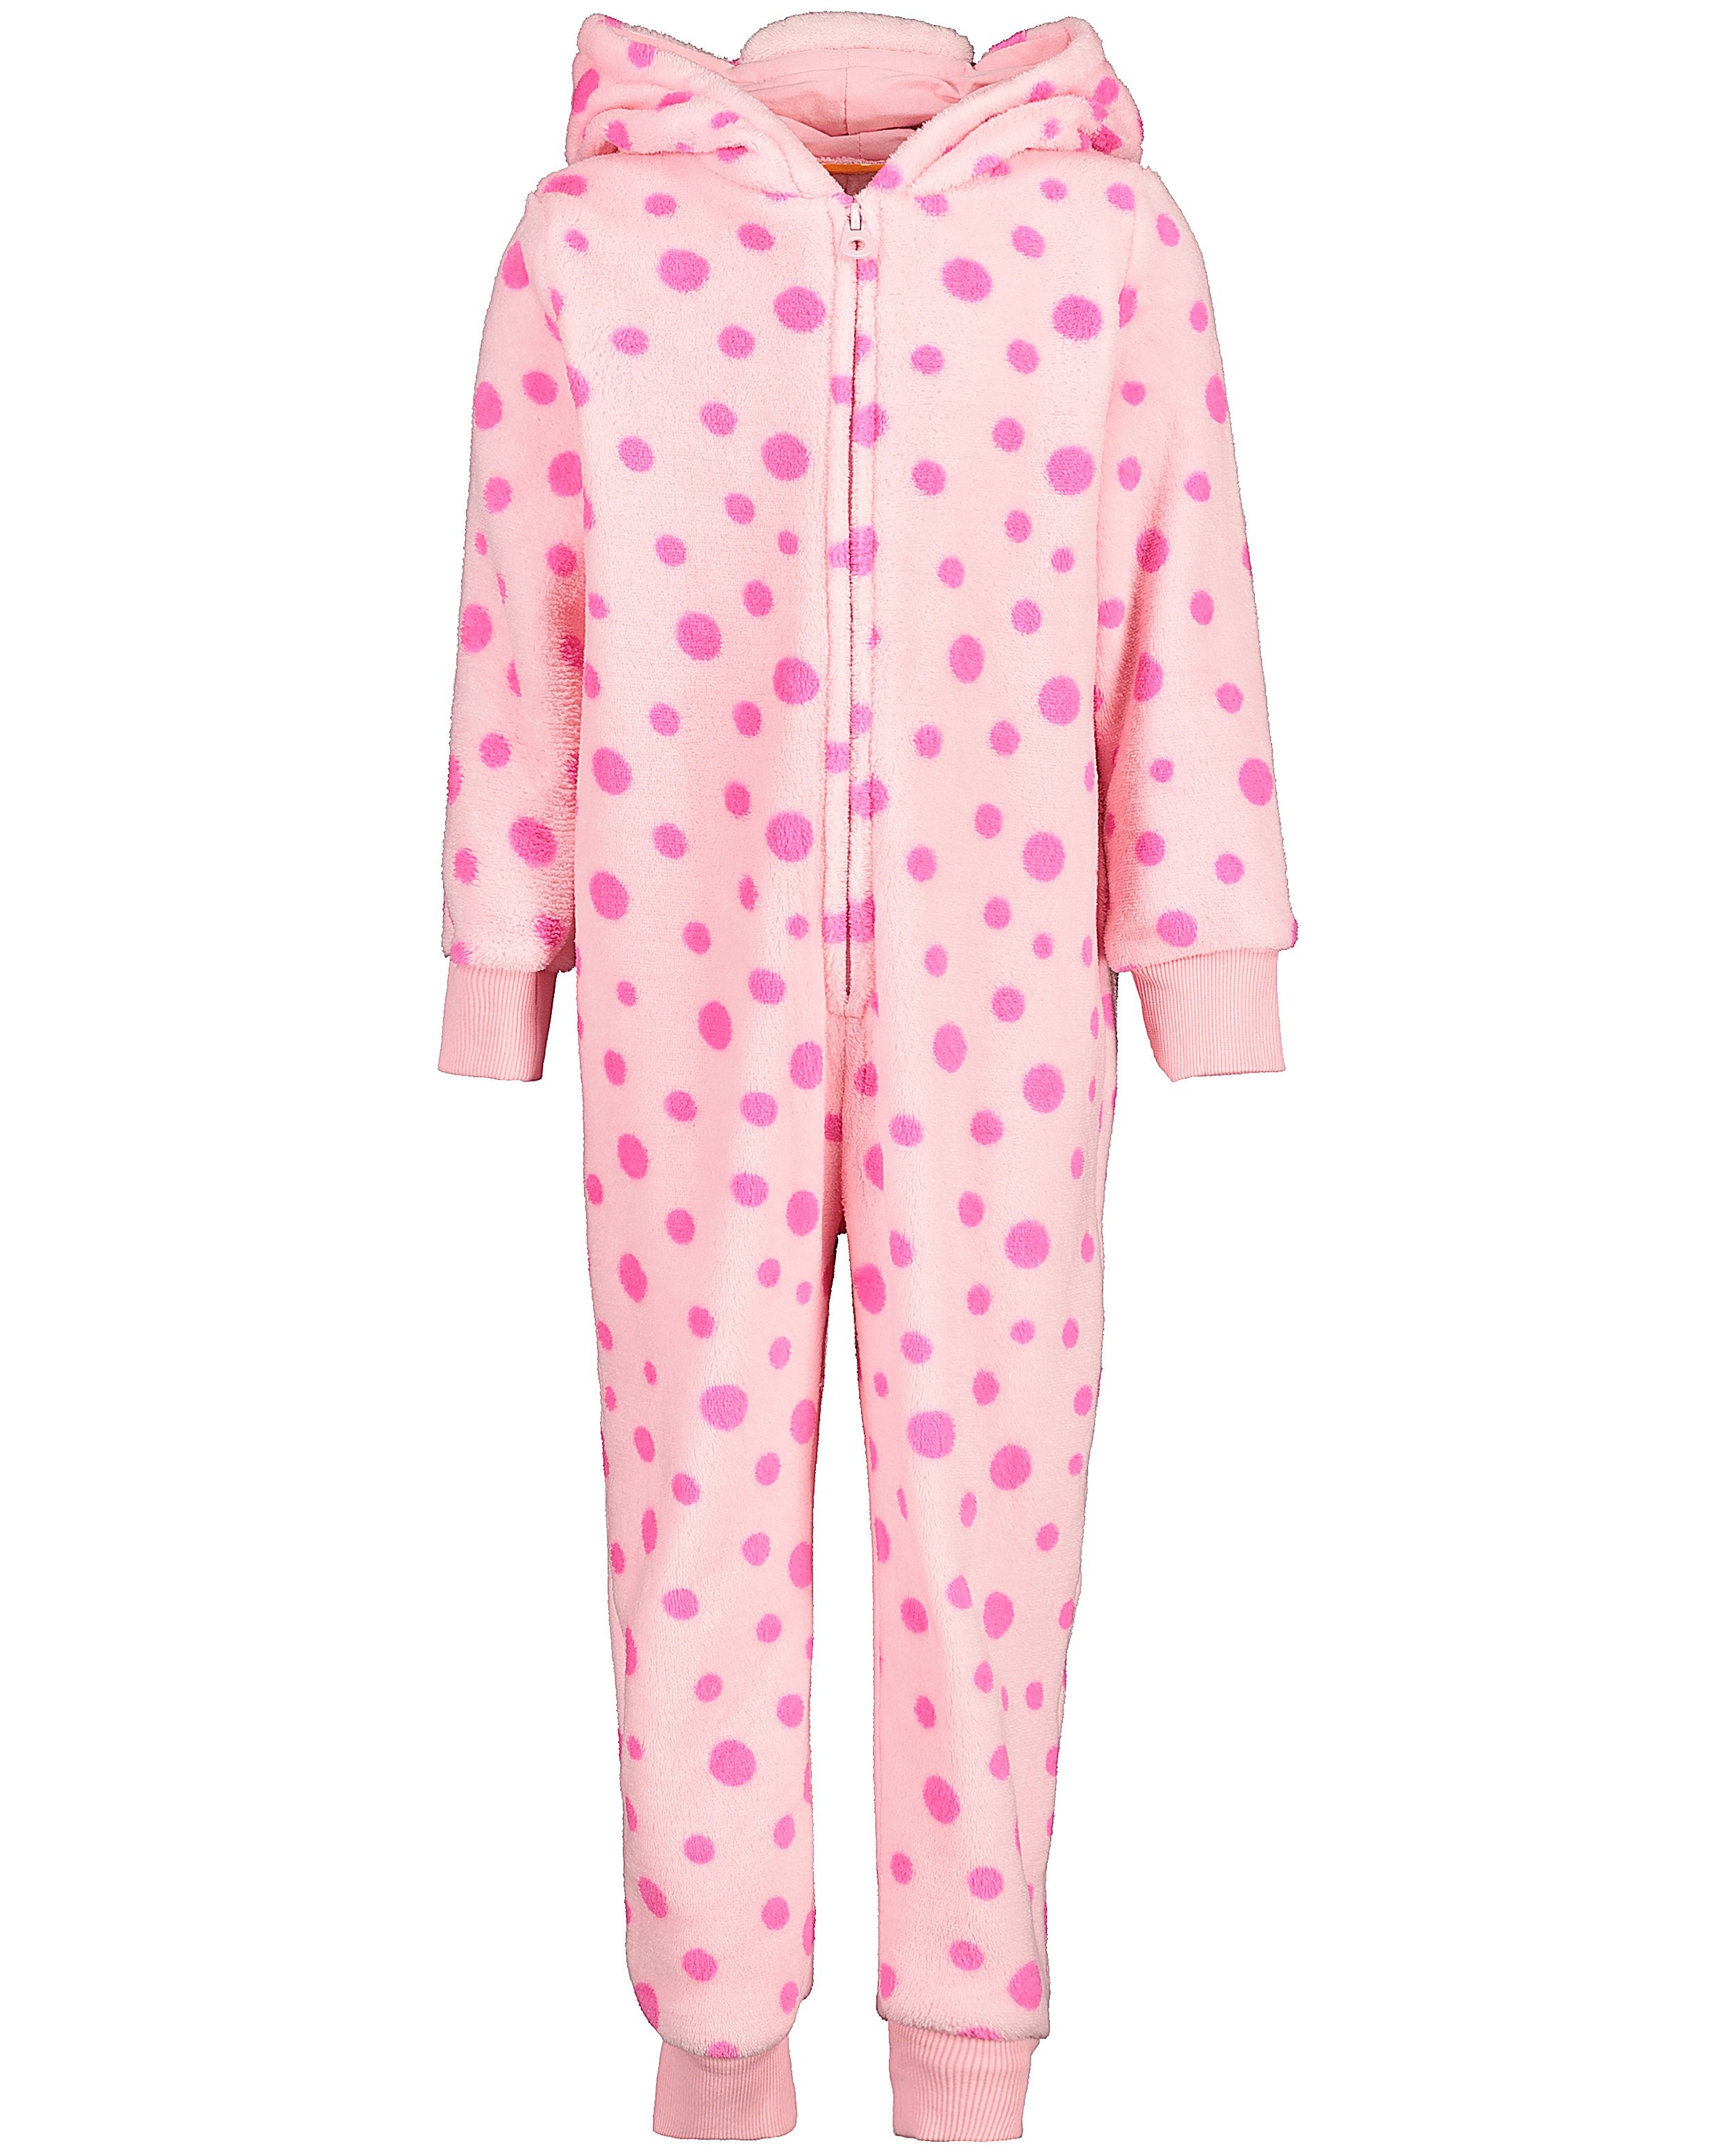 Pyjamas - Combinaison rose